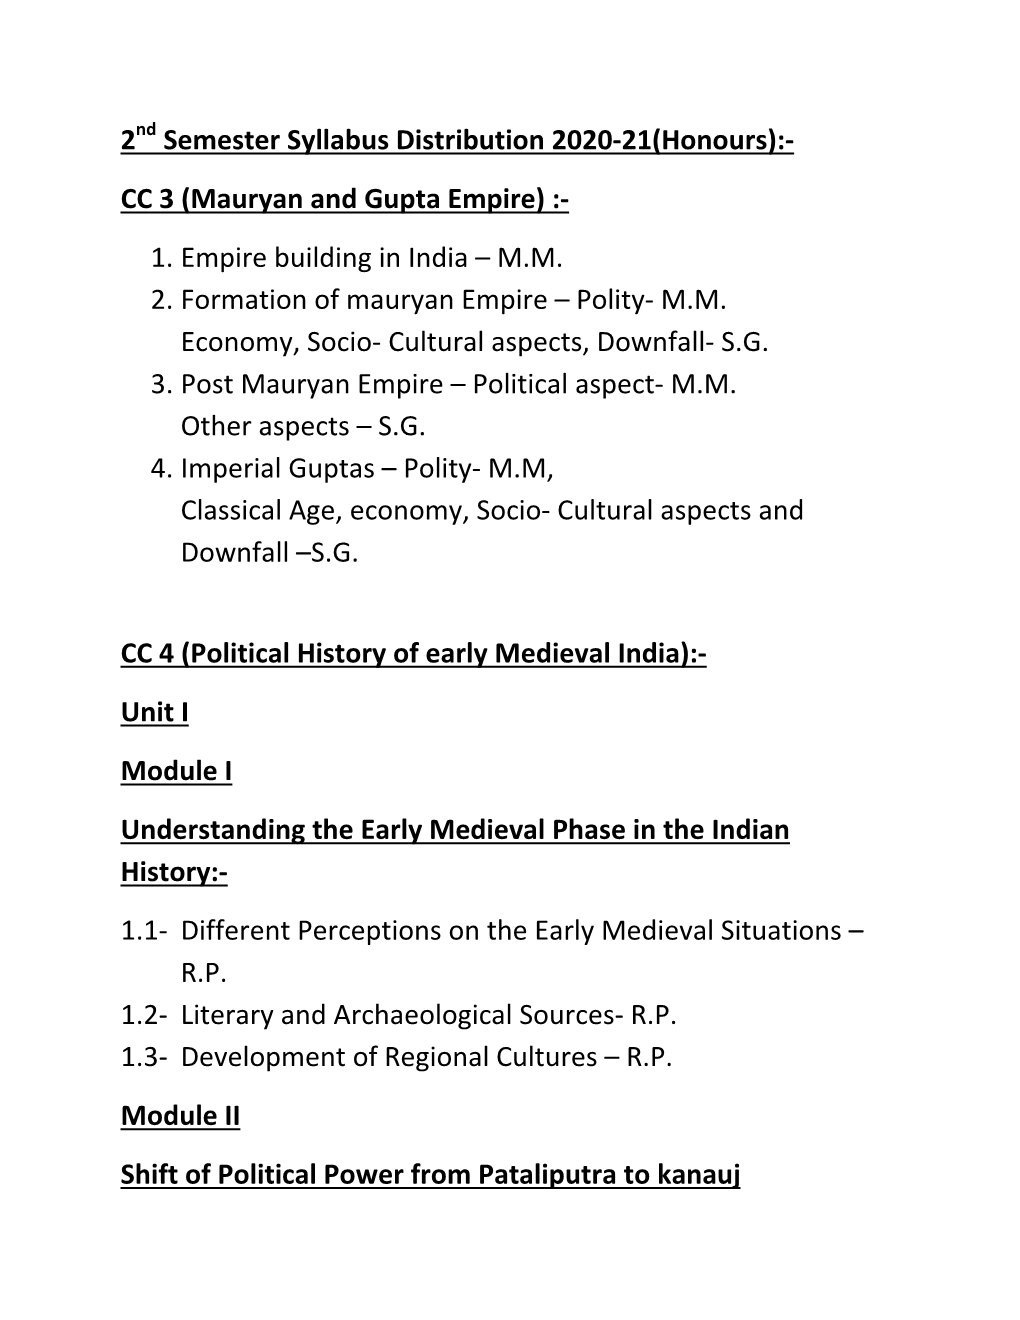 Mauryan and Gupta Empire) :- 1